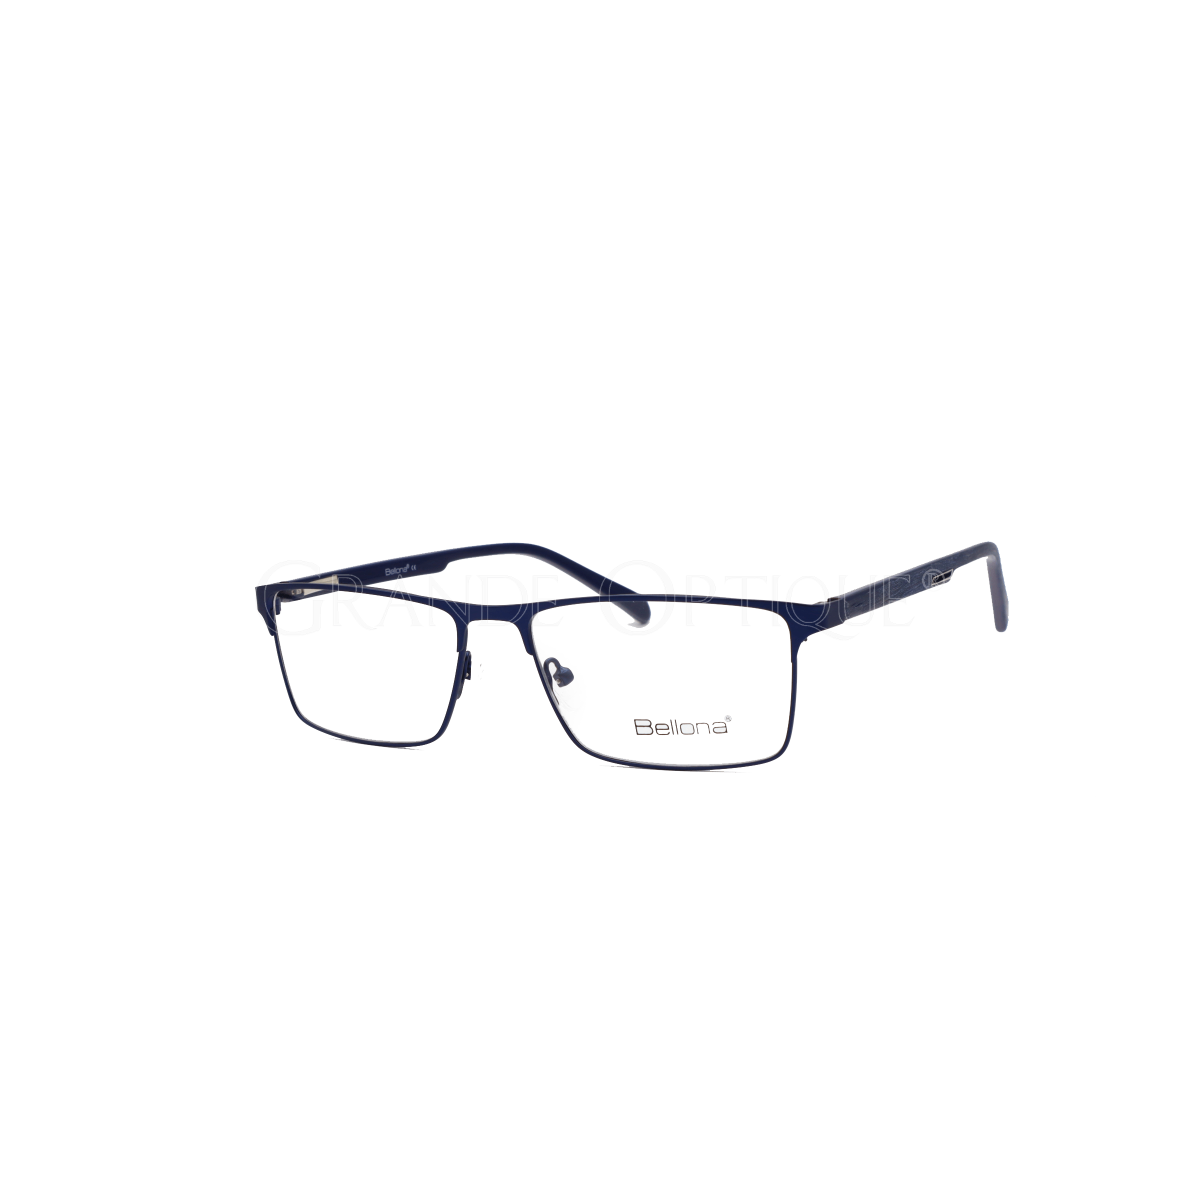 Rame de ochelari Bellona 2051 c3